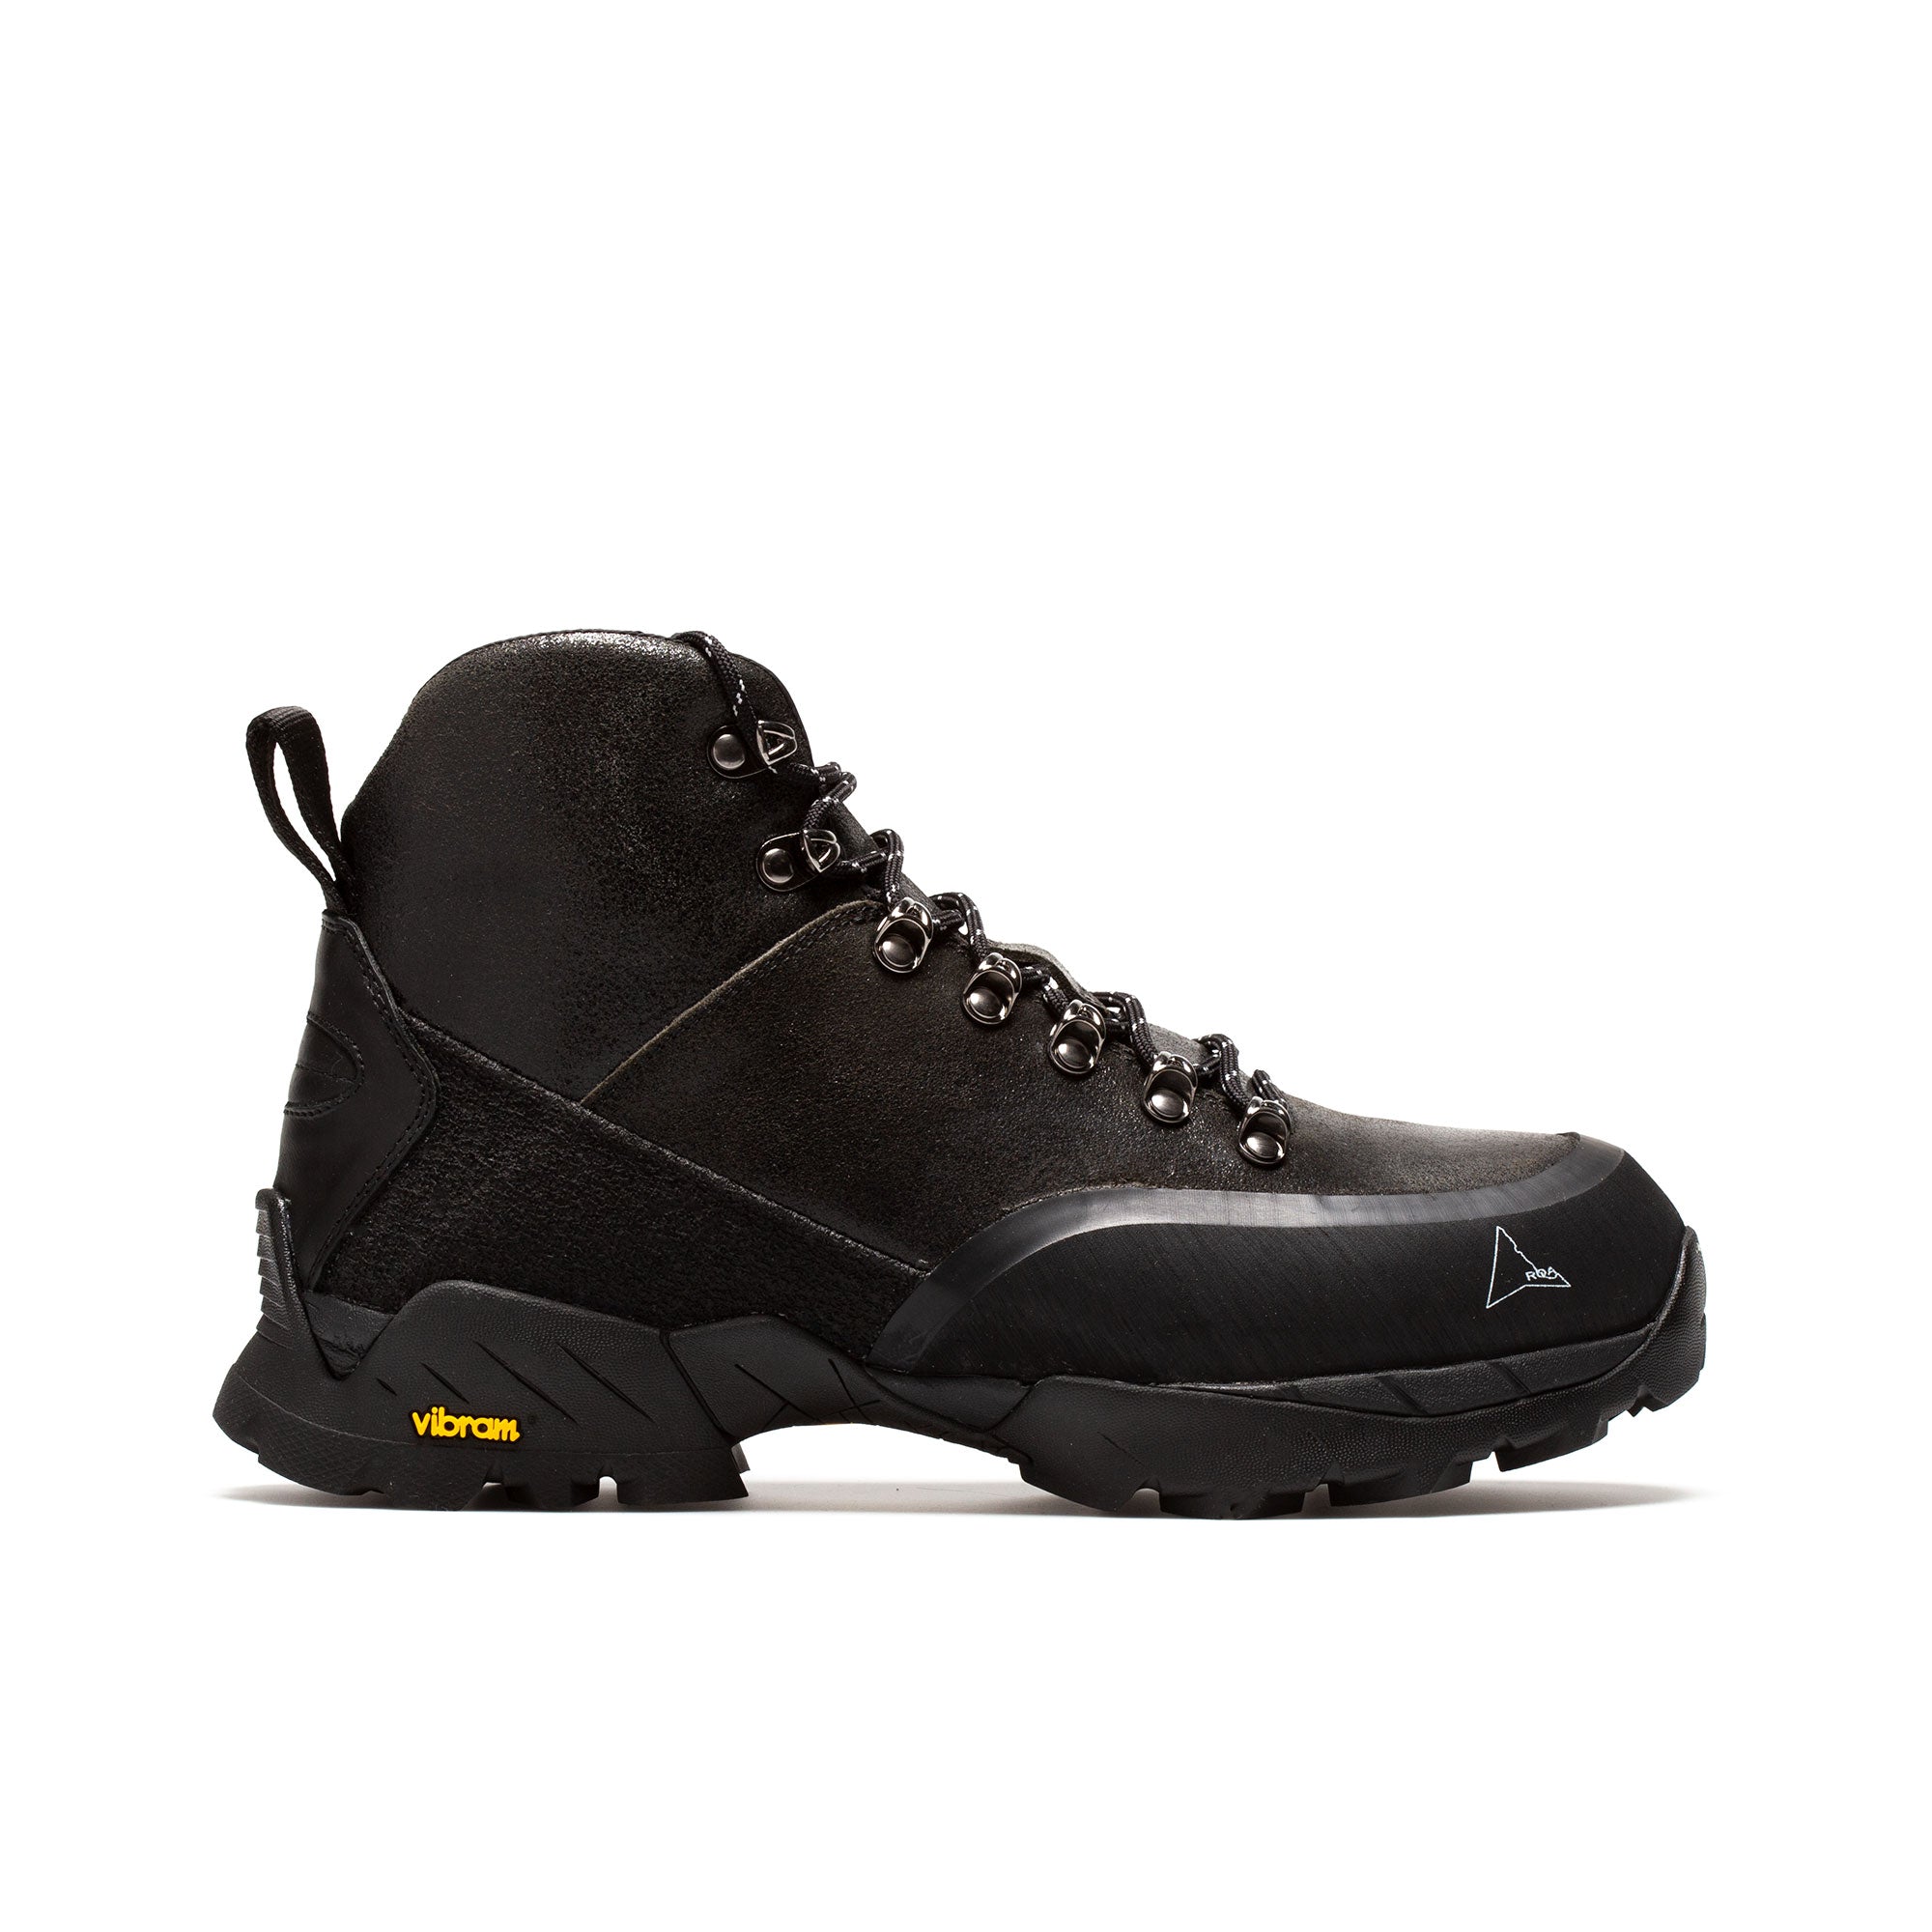 Roa Andreas Hiking Boots - Black (ASFA08-001)